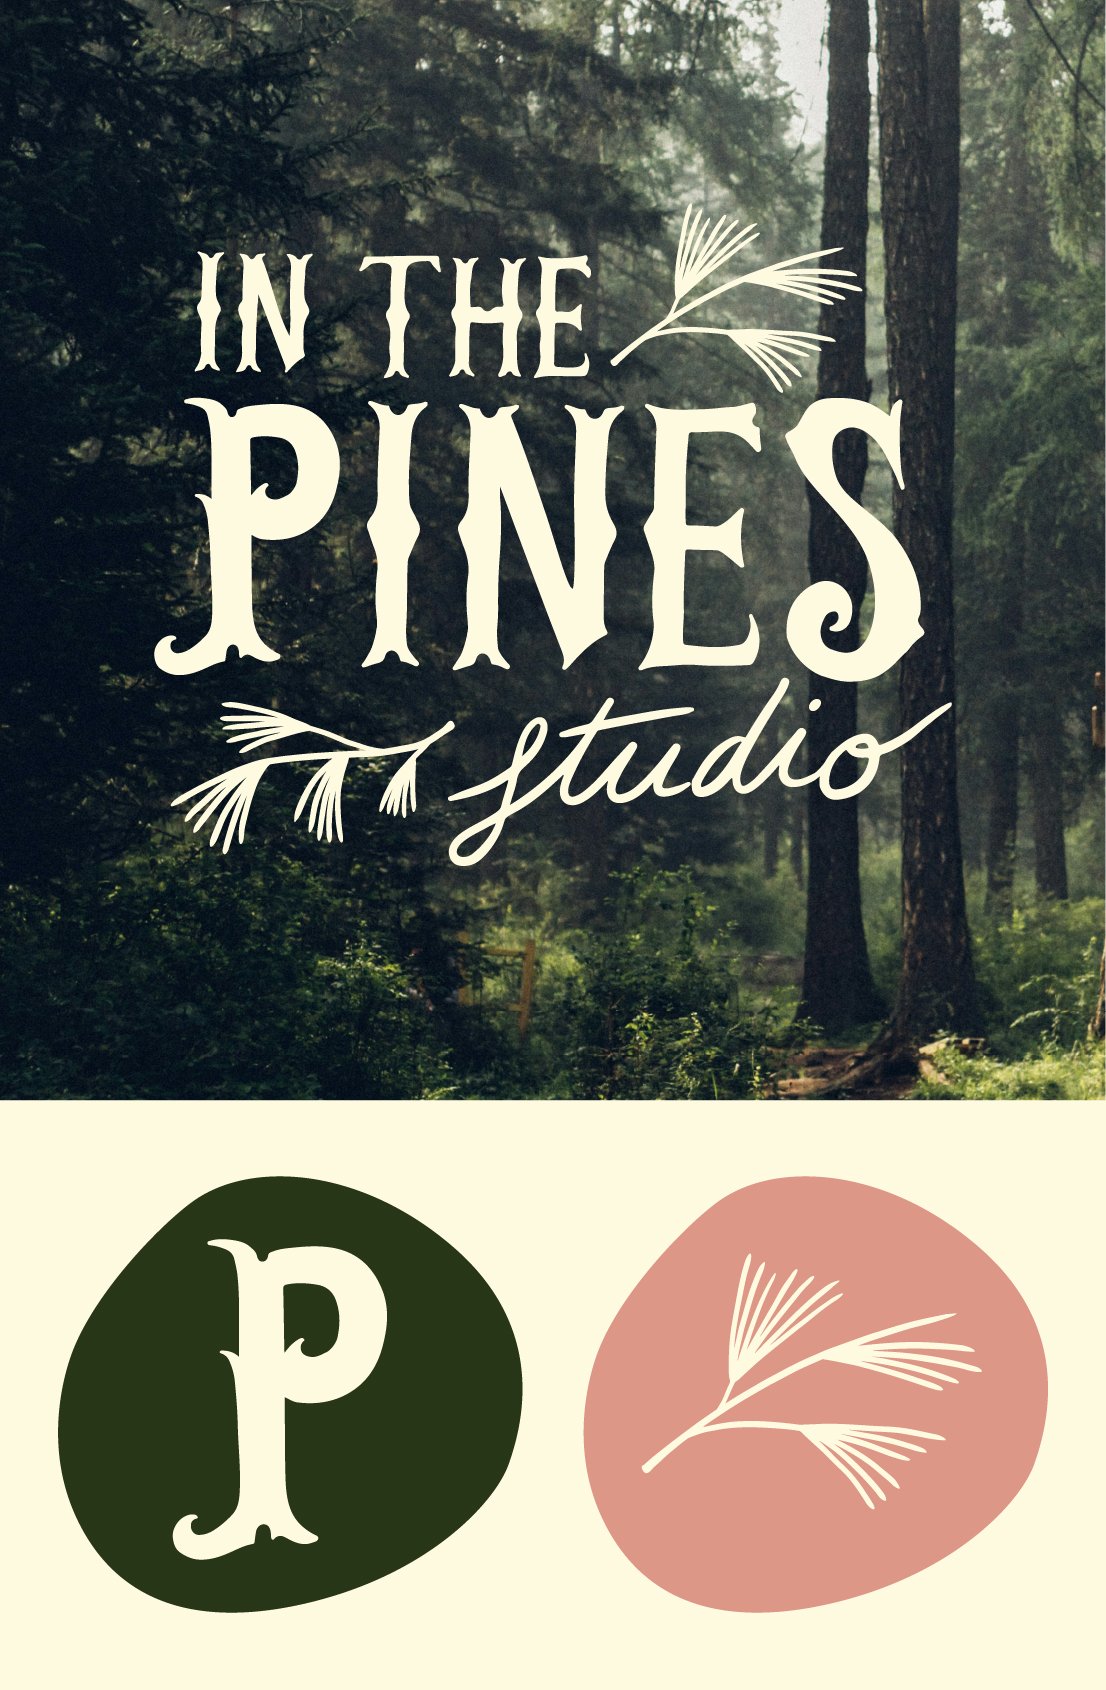 webb_in the pines brand id.jpg